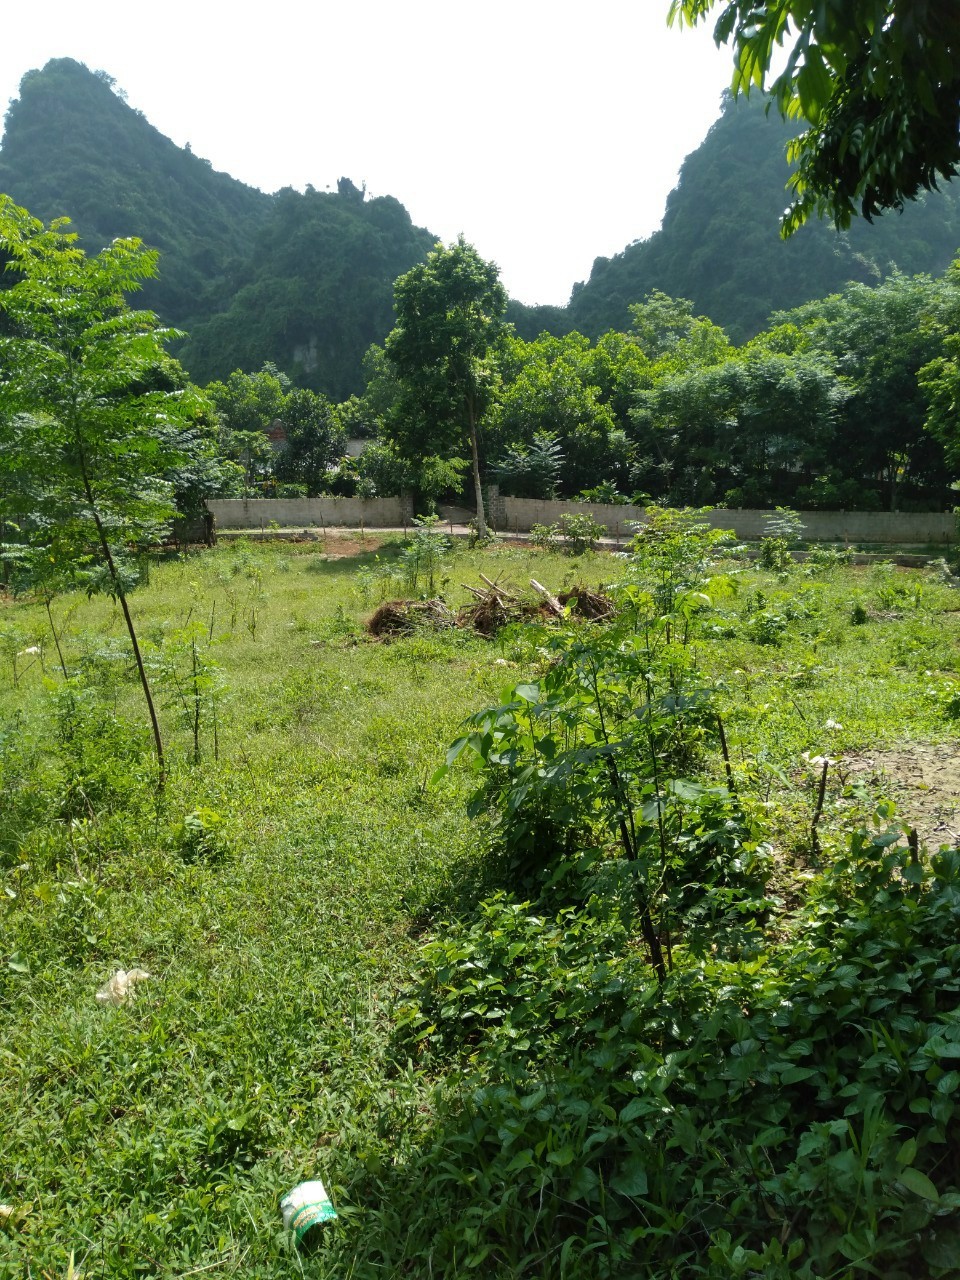 Gia đình cần chuyển nhượng lô đất 1000m đất ở có 500m thổ cư tại Lương Sơn Hòa Bình giá chưa đến 1 tỉ.